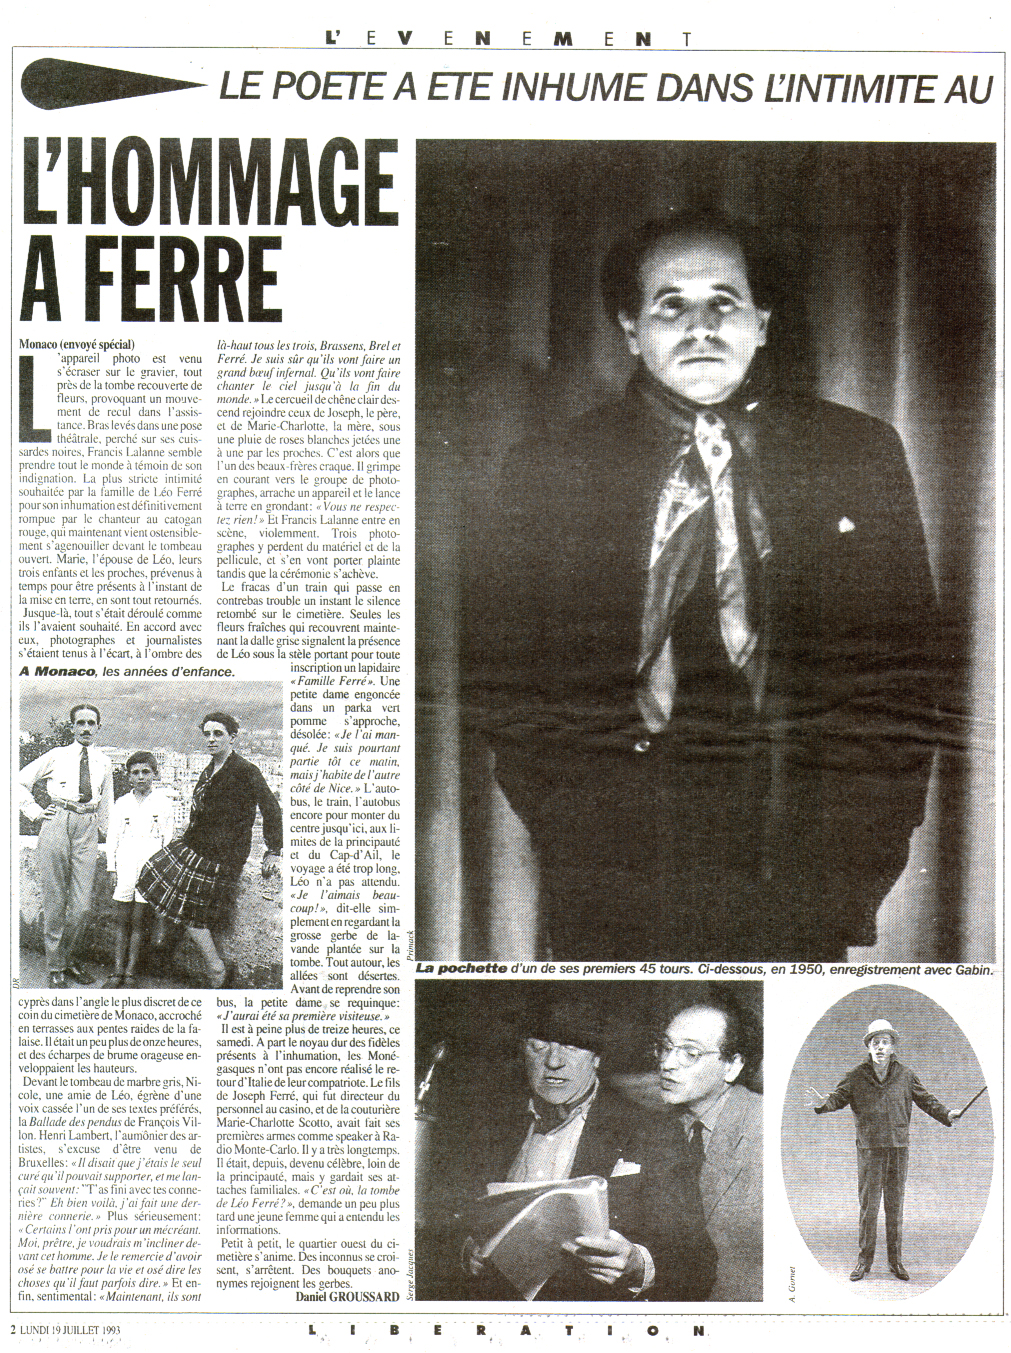 Léo Ferré - Libération N°3781 du 19/07/1993